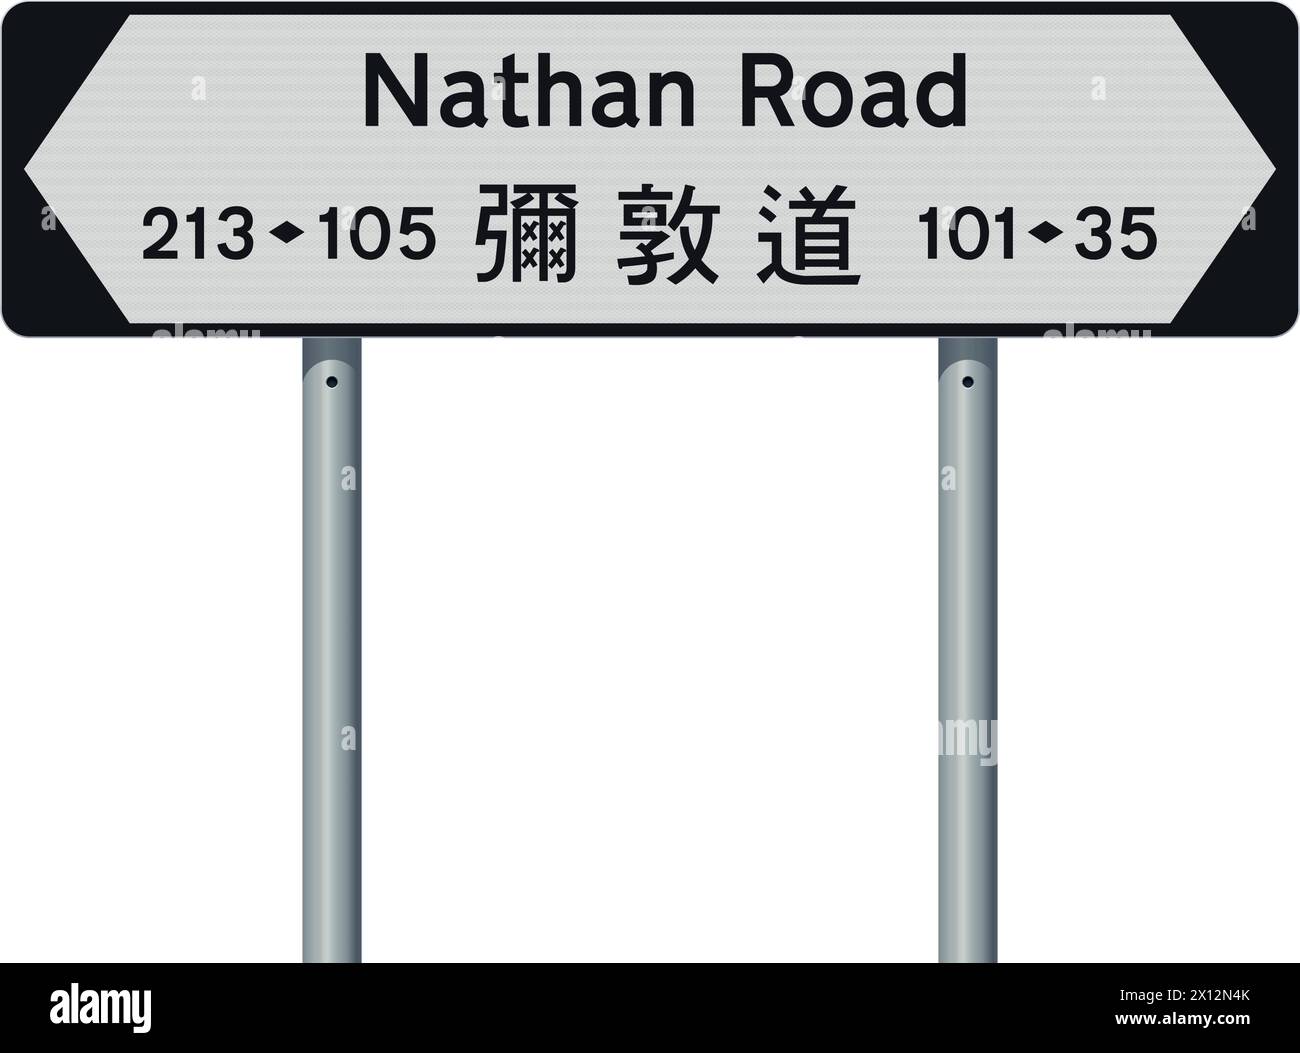 Illustration vectorielle de Nathan Road (Hong Kong) avec traduction en chinois sur panneau routier blanc et noir Illustration de Vecteur